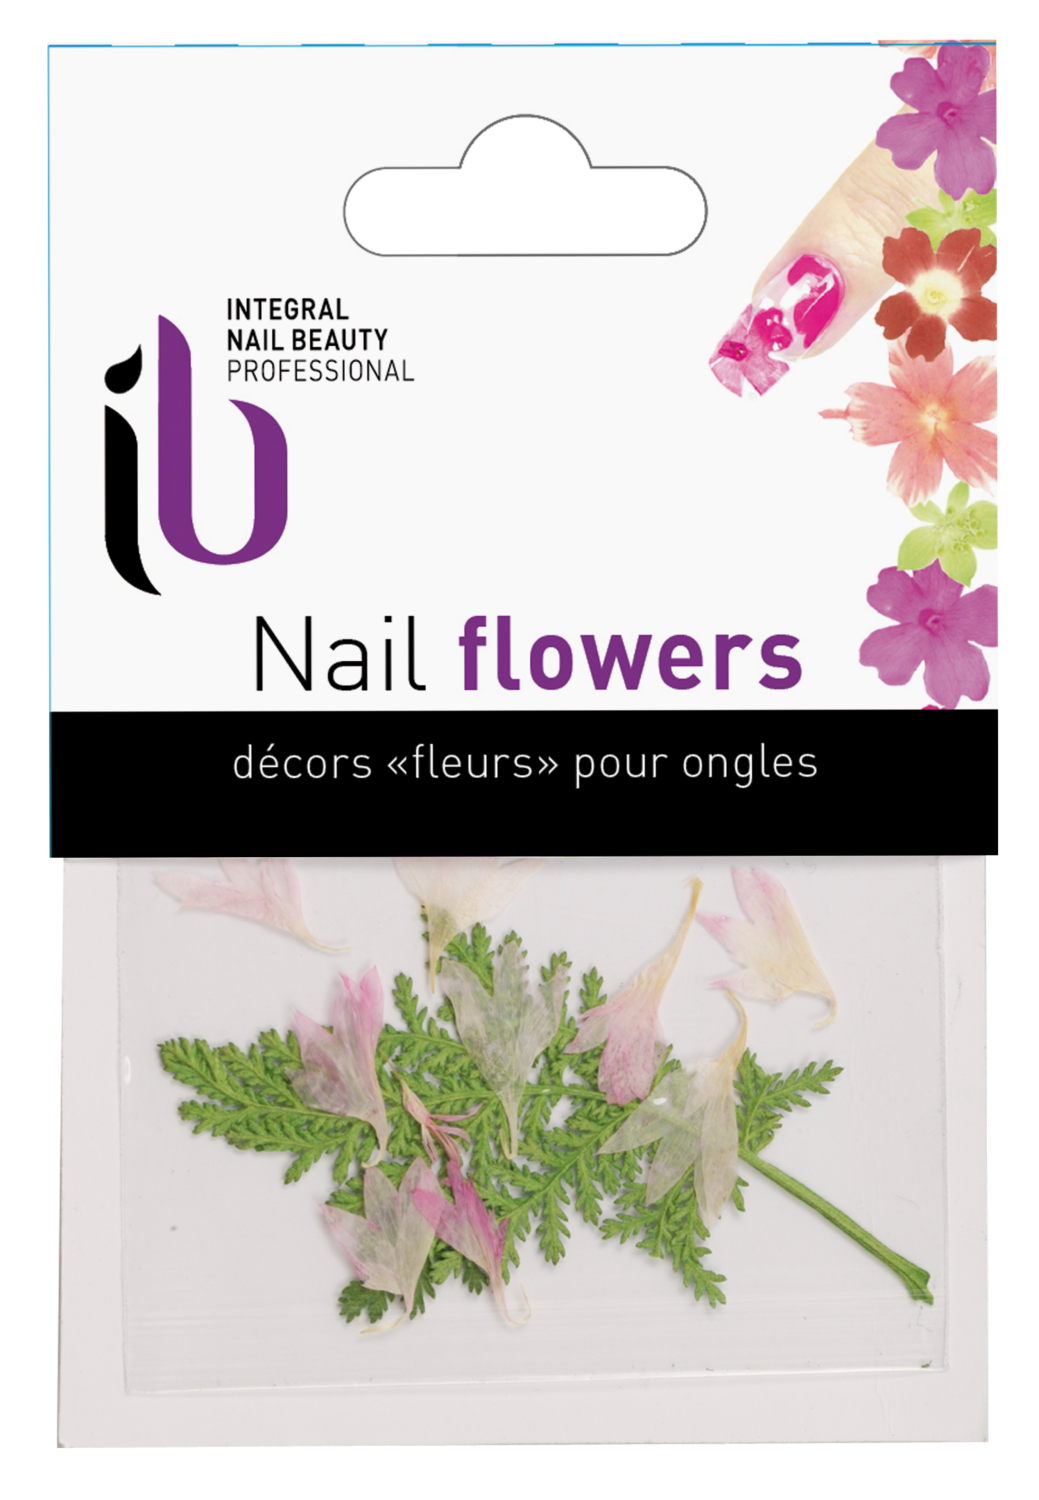 Real Flower - Décors "fleurs" pour ongles 1